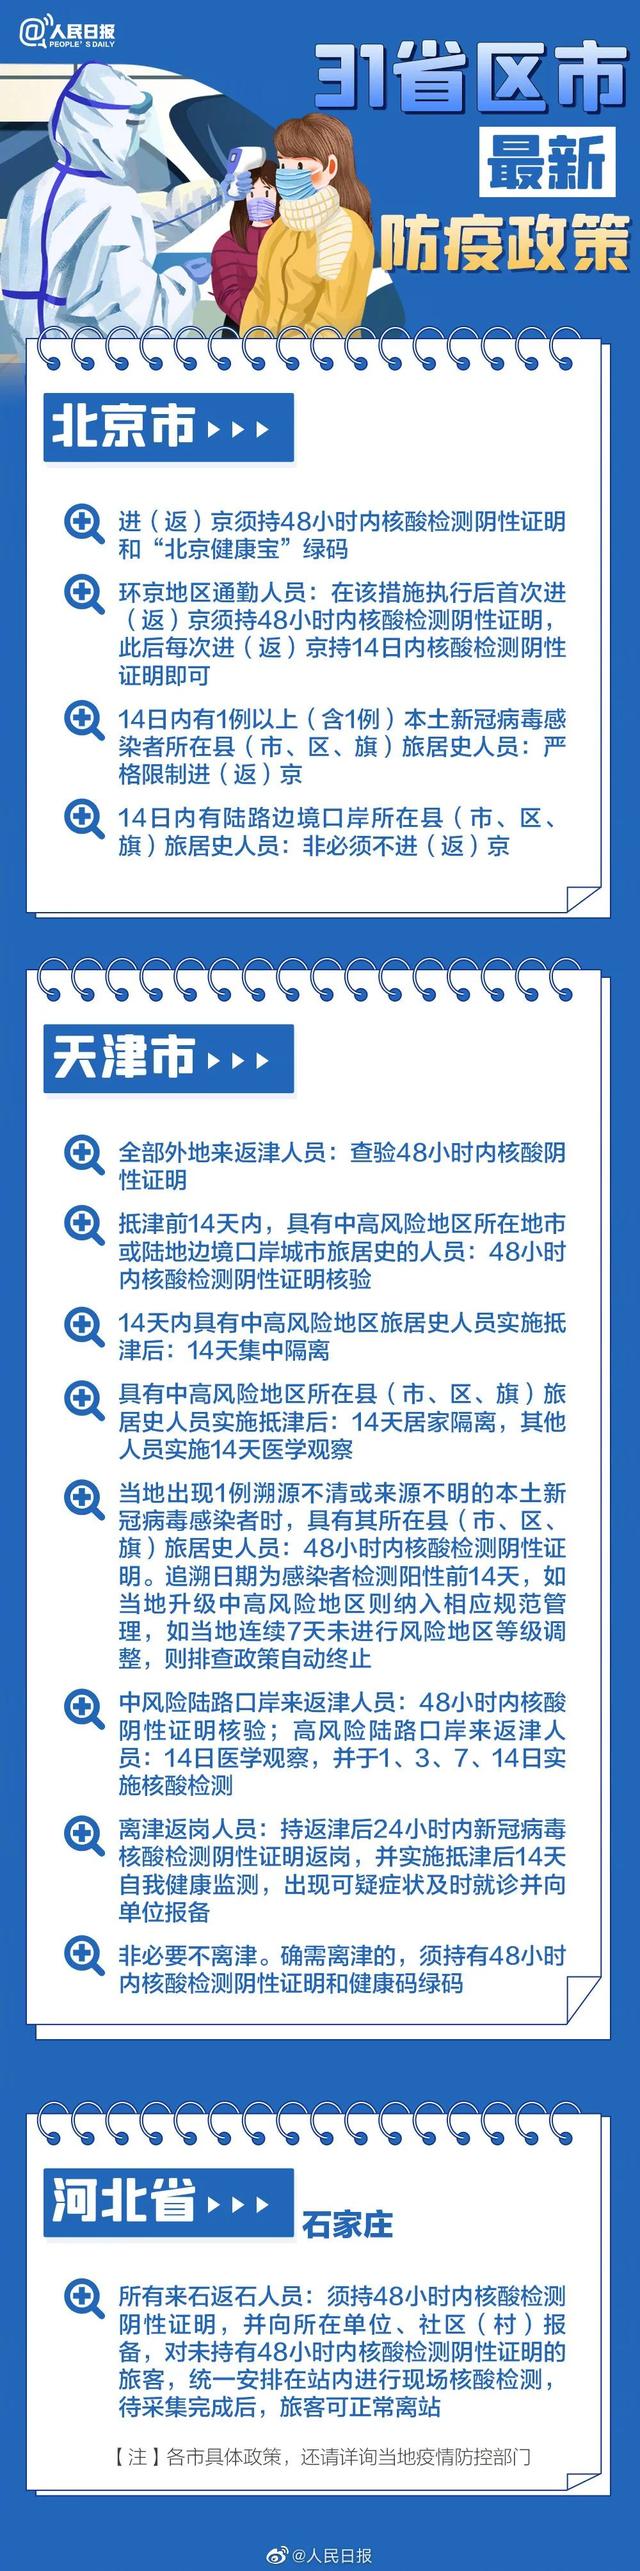 2022春节返乡31省市区防疫政策要求说明长图一览 1